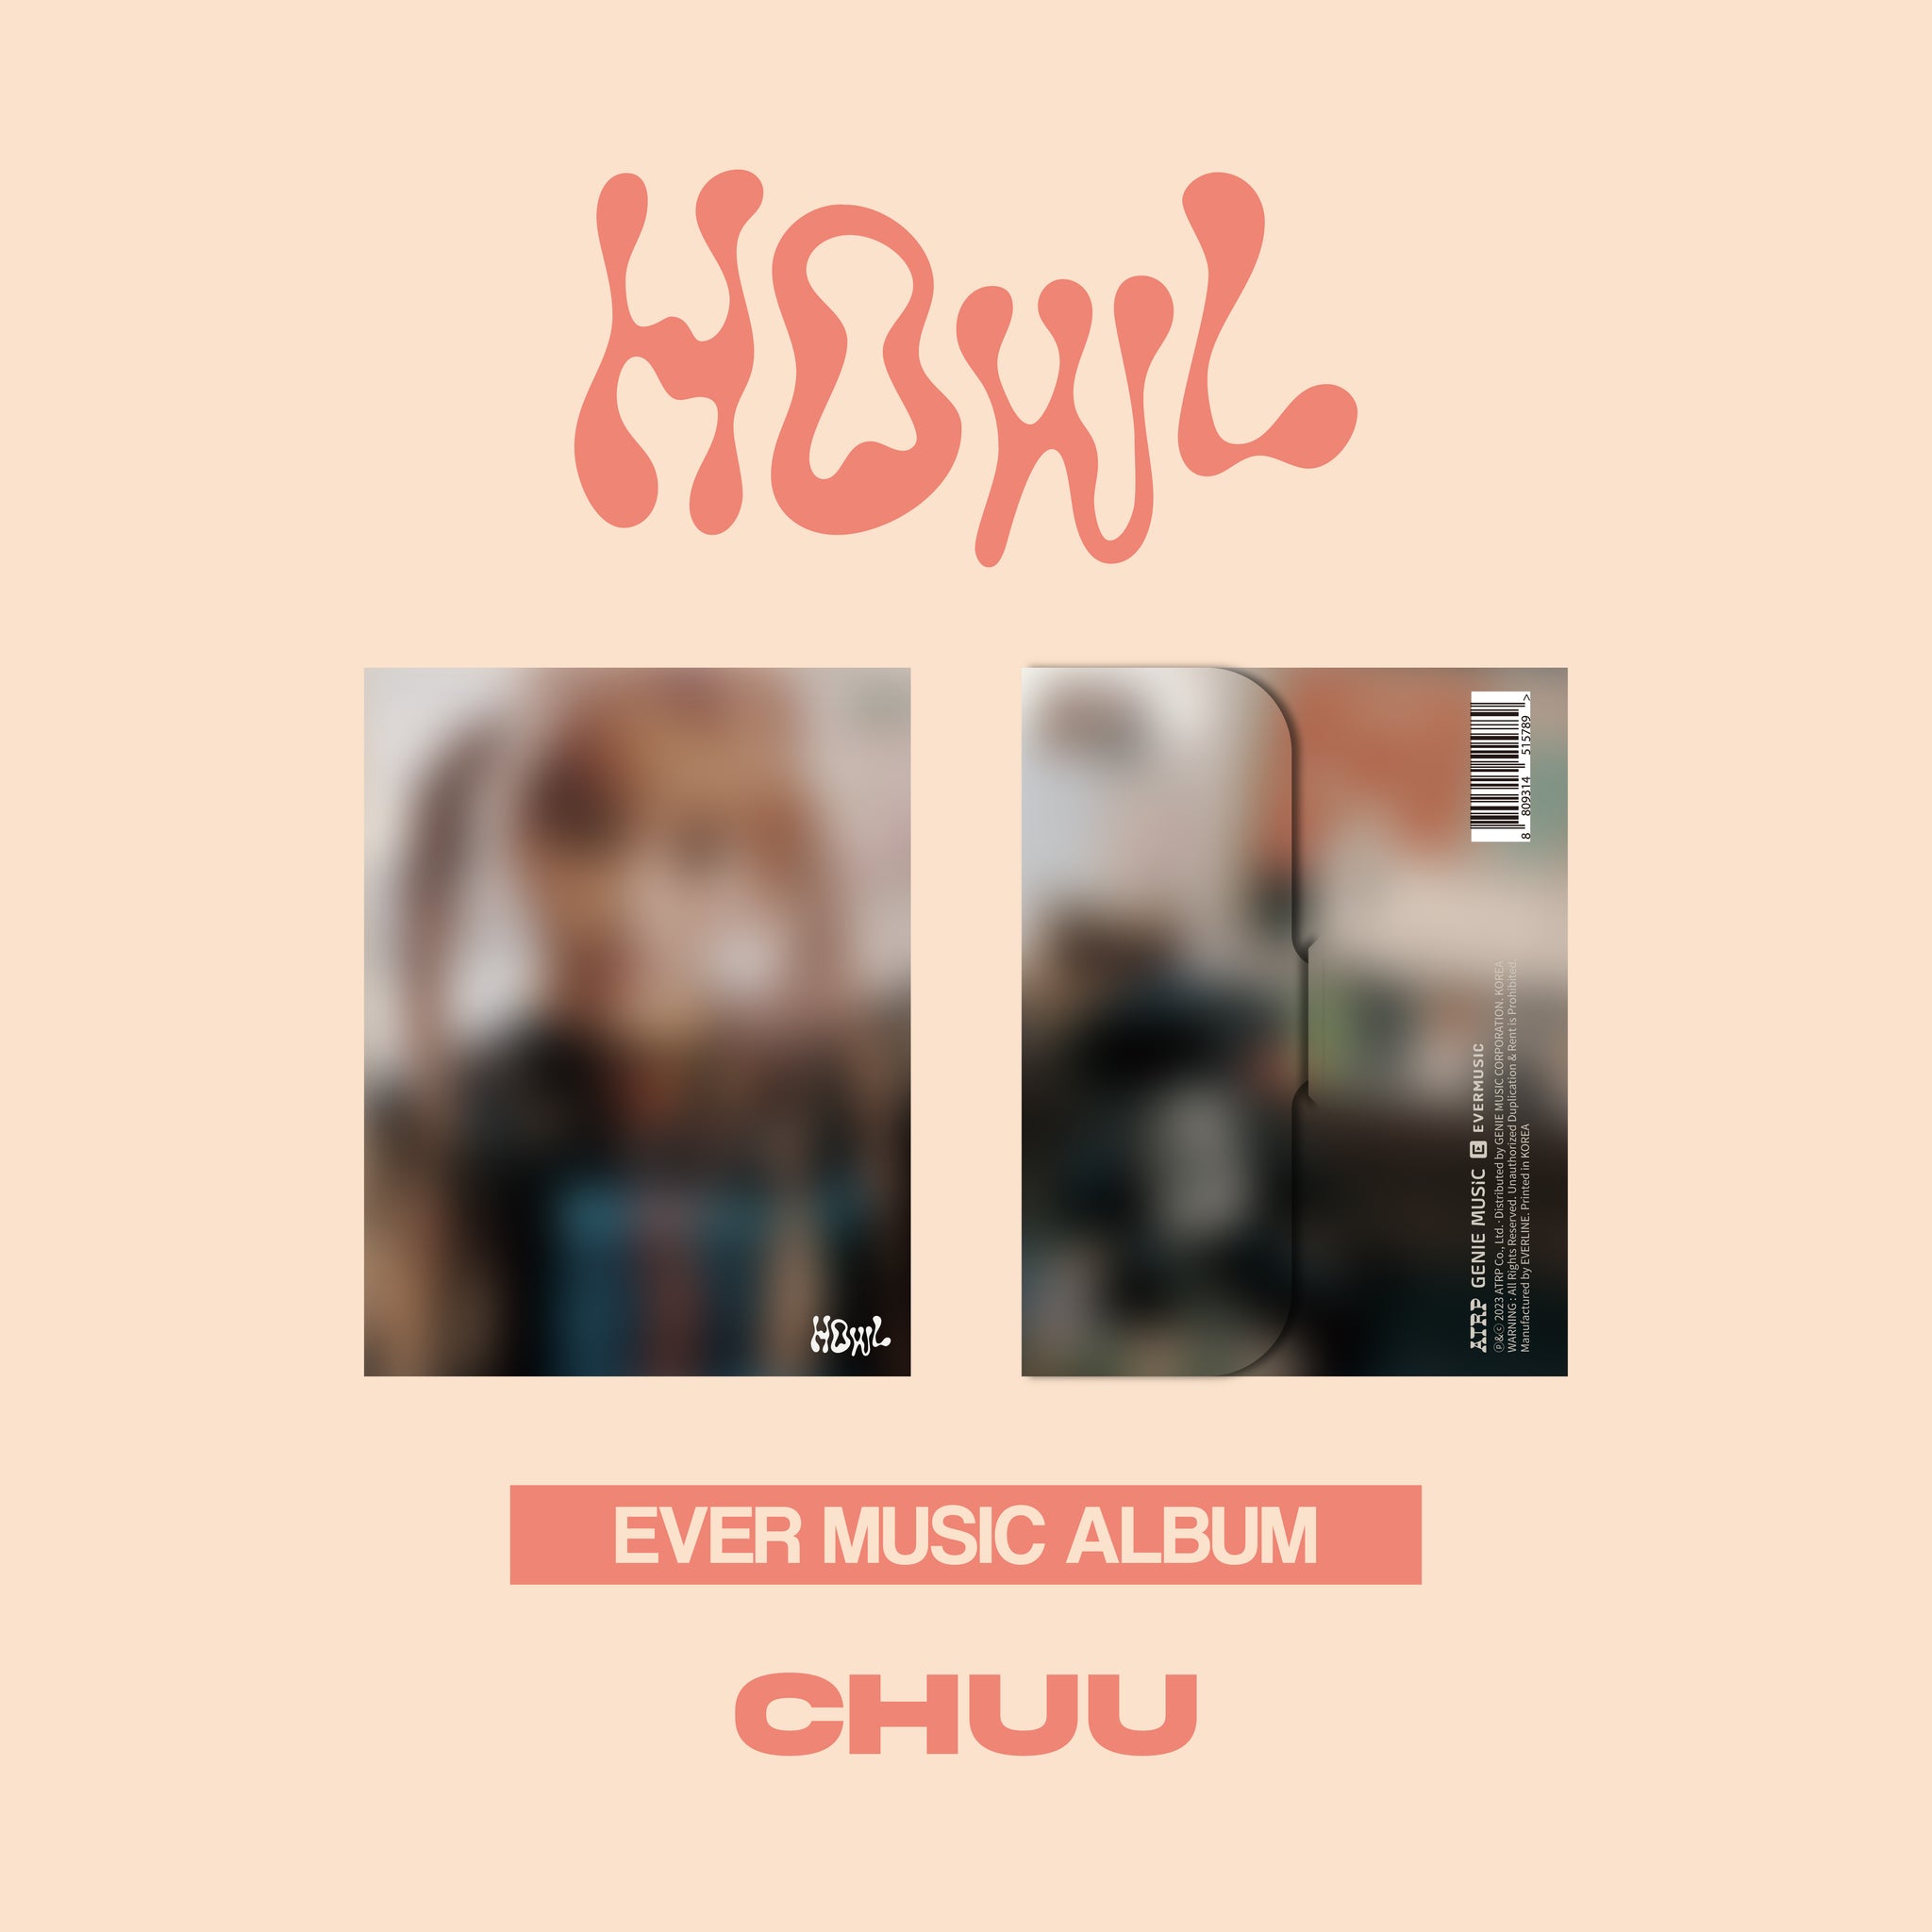 CHUU - Howl (Ever Music Album ver.)